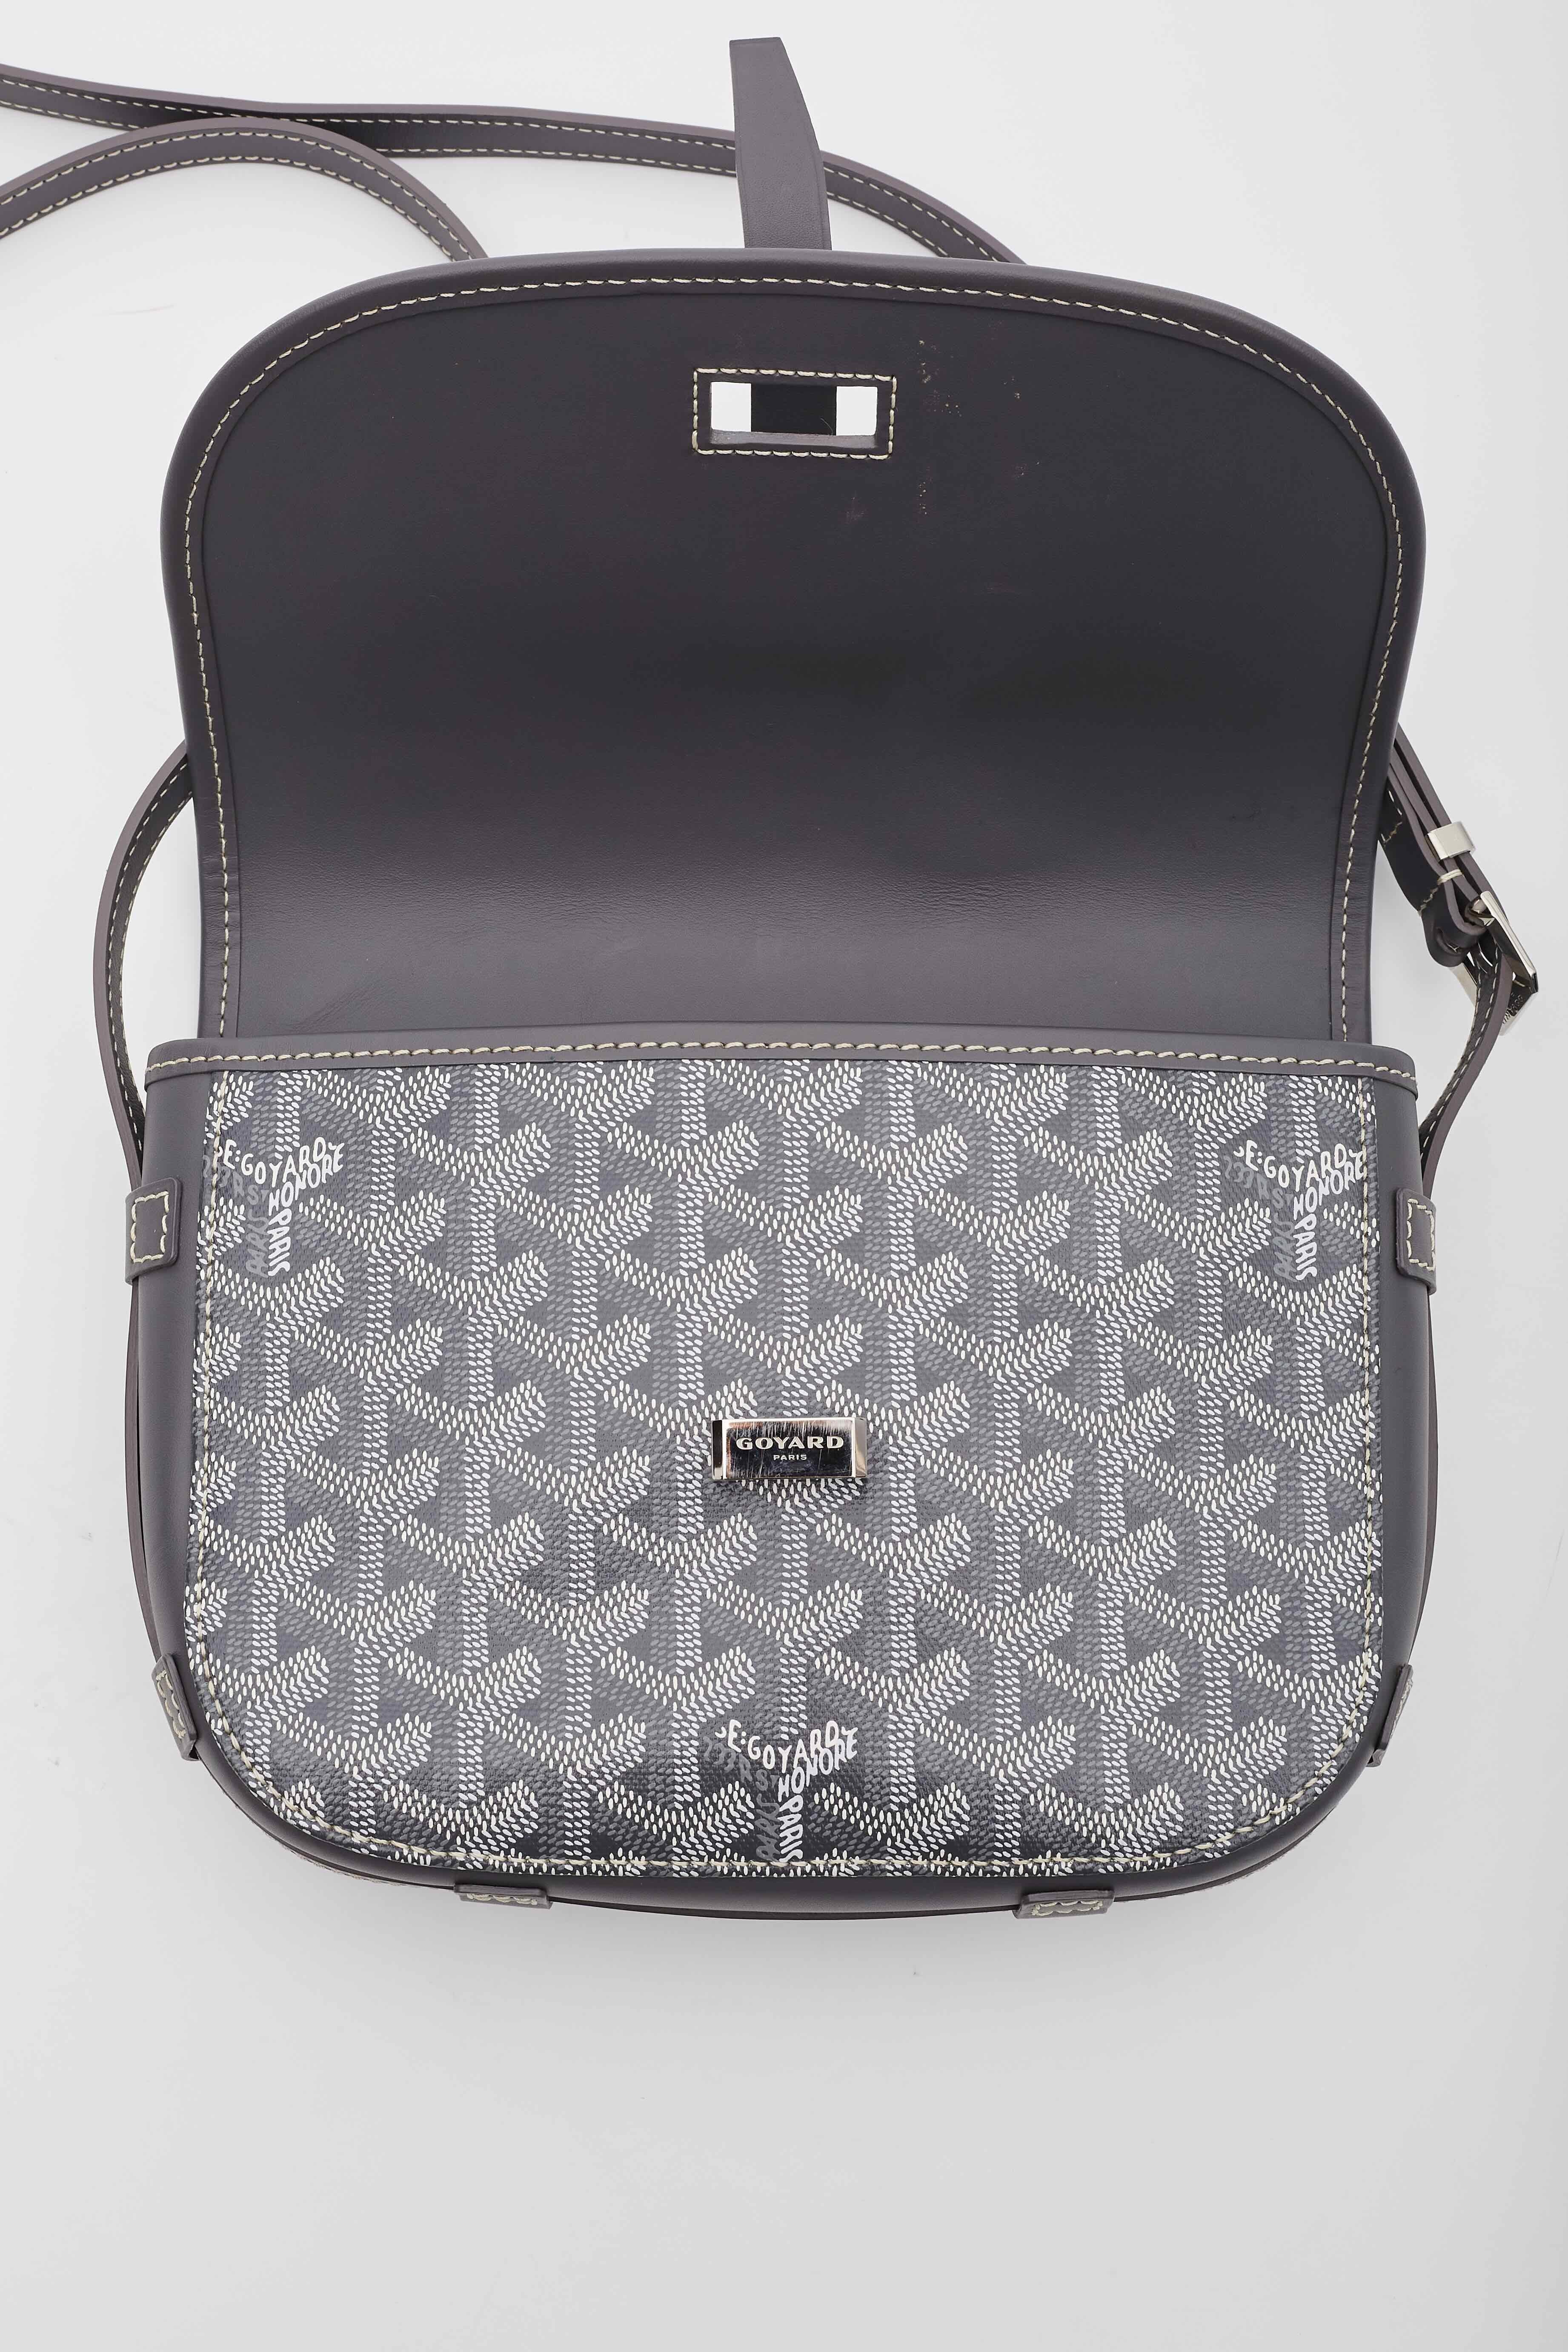 Goyard Belvedere Pm Grey Shoulder Bag 1